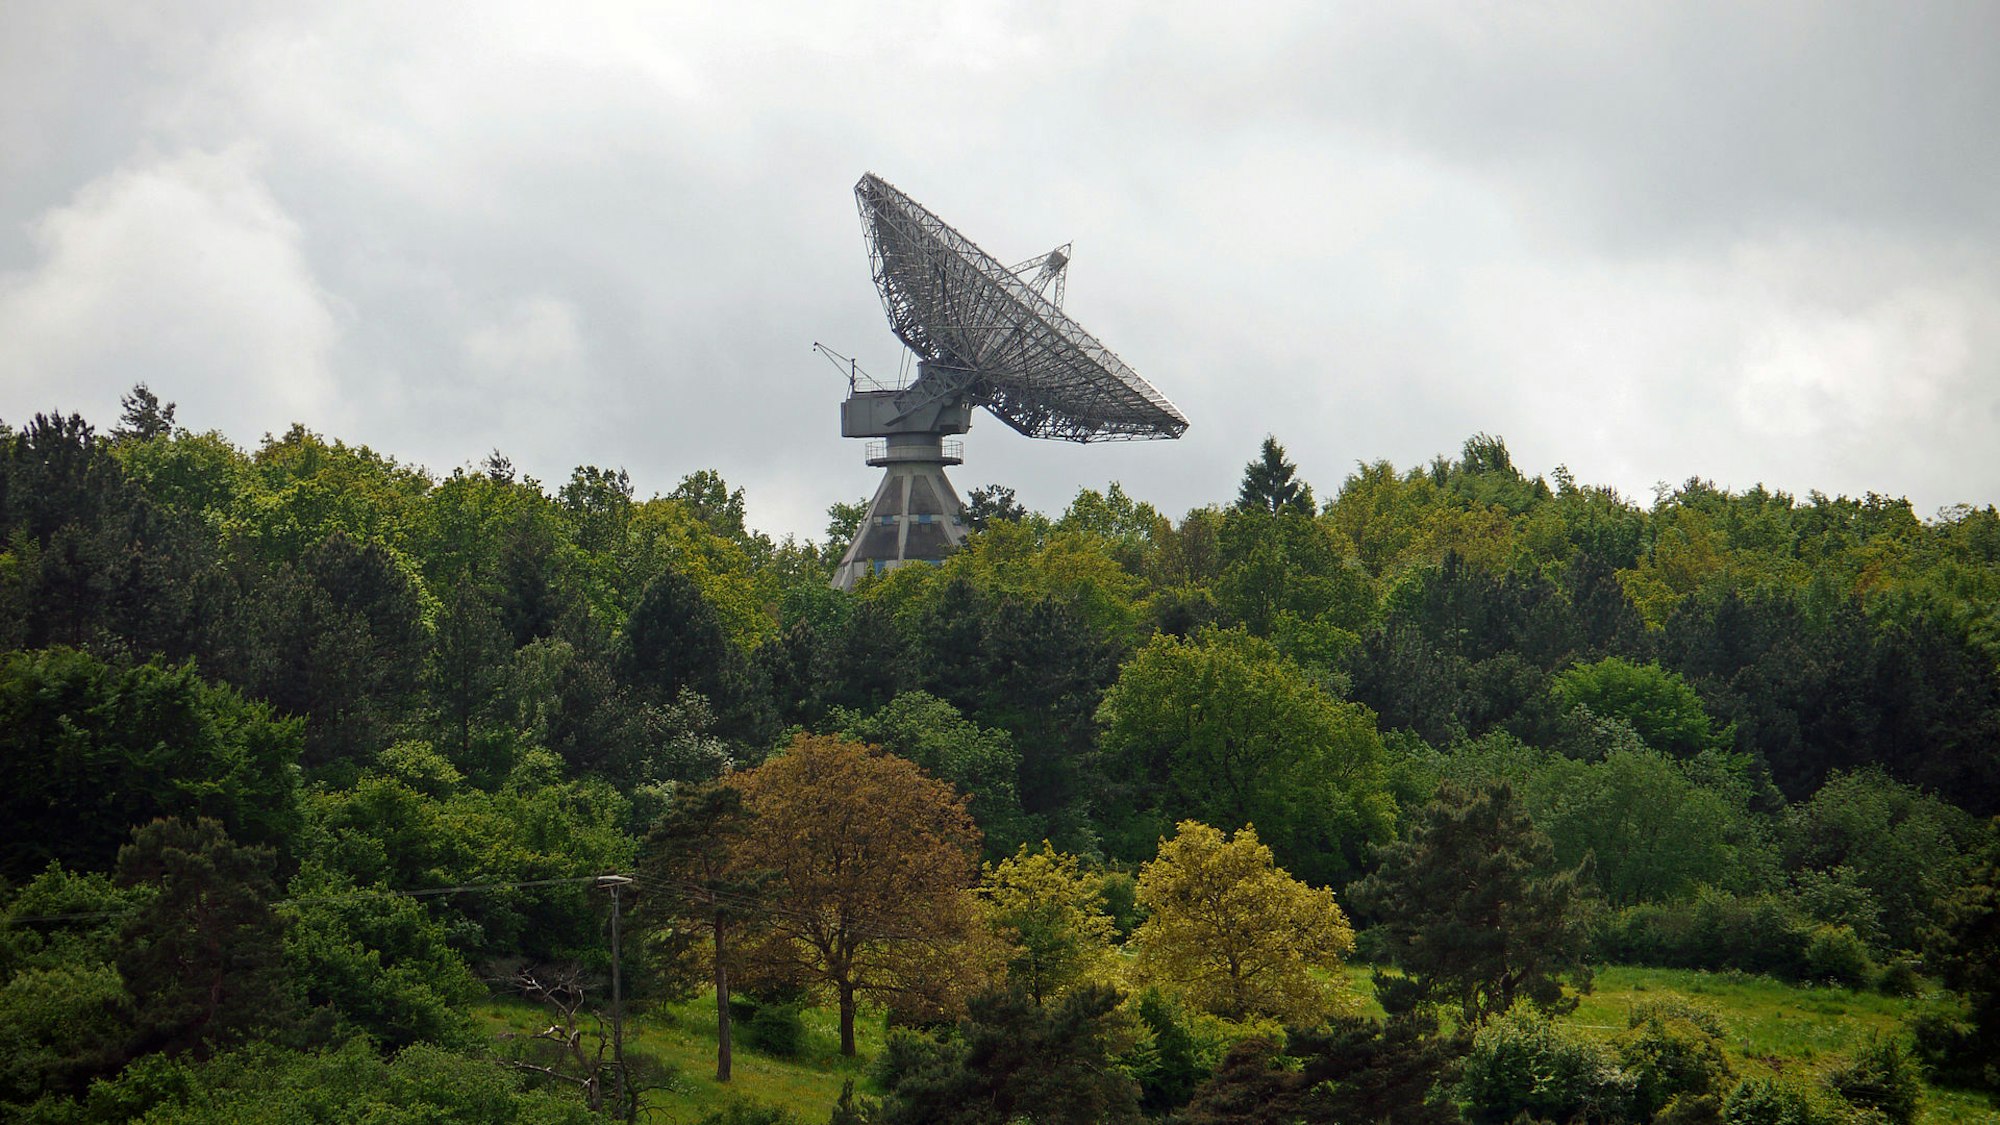 Radioteleskop in einem grünen Wald